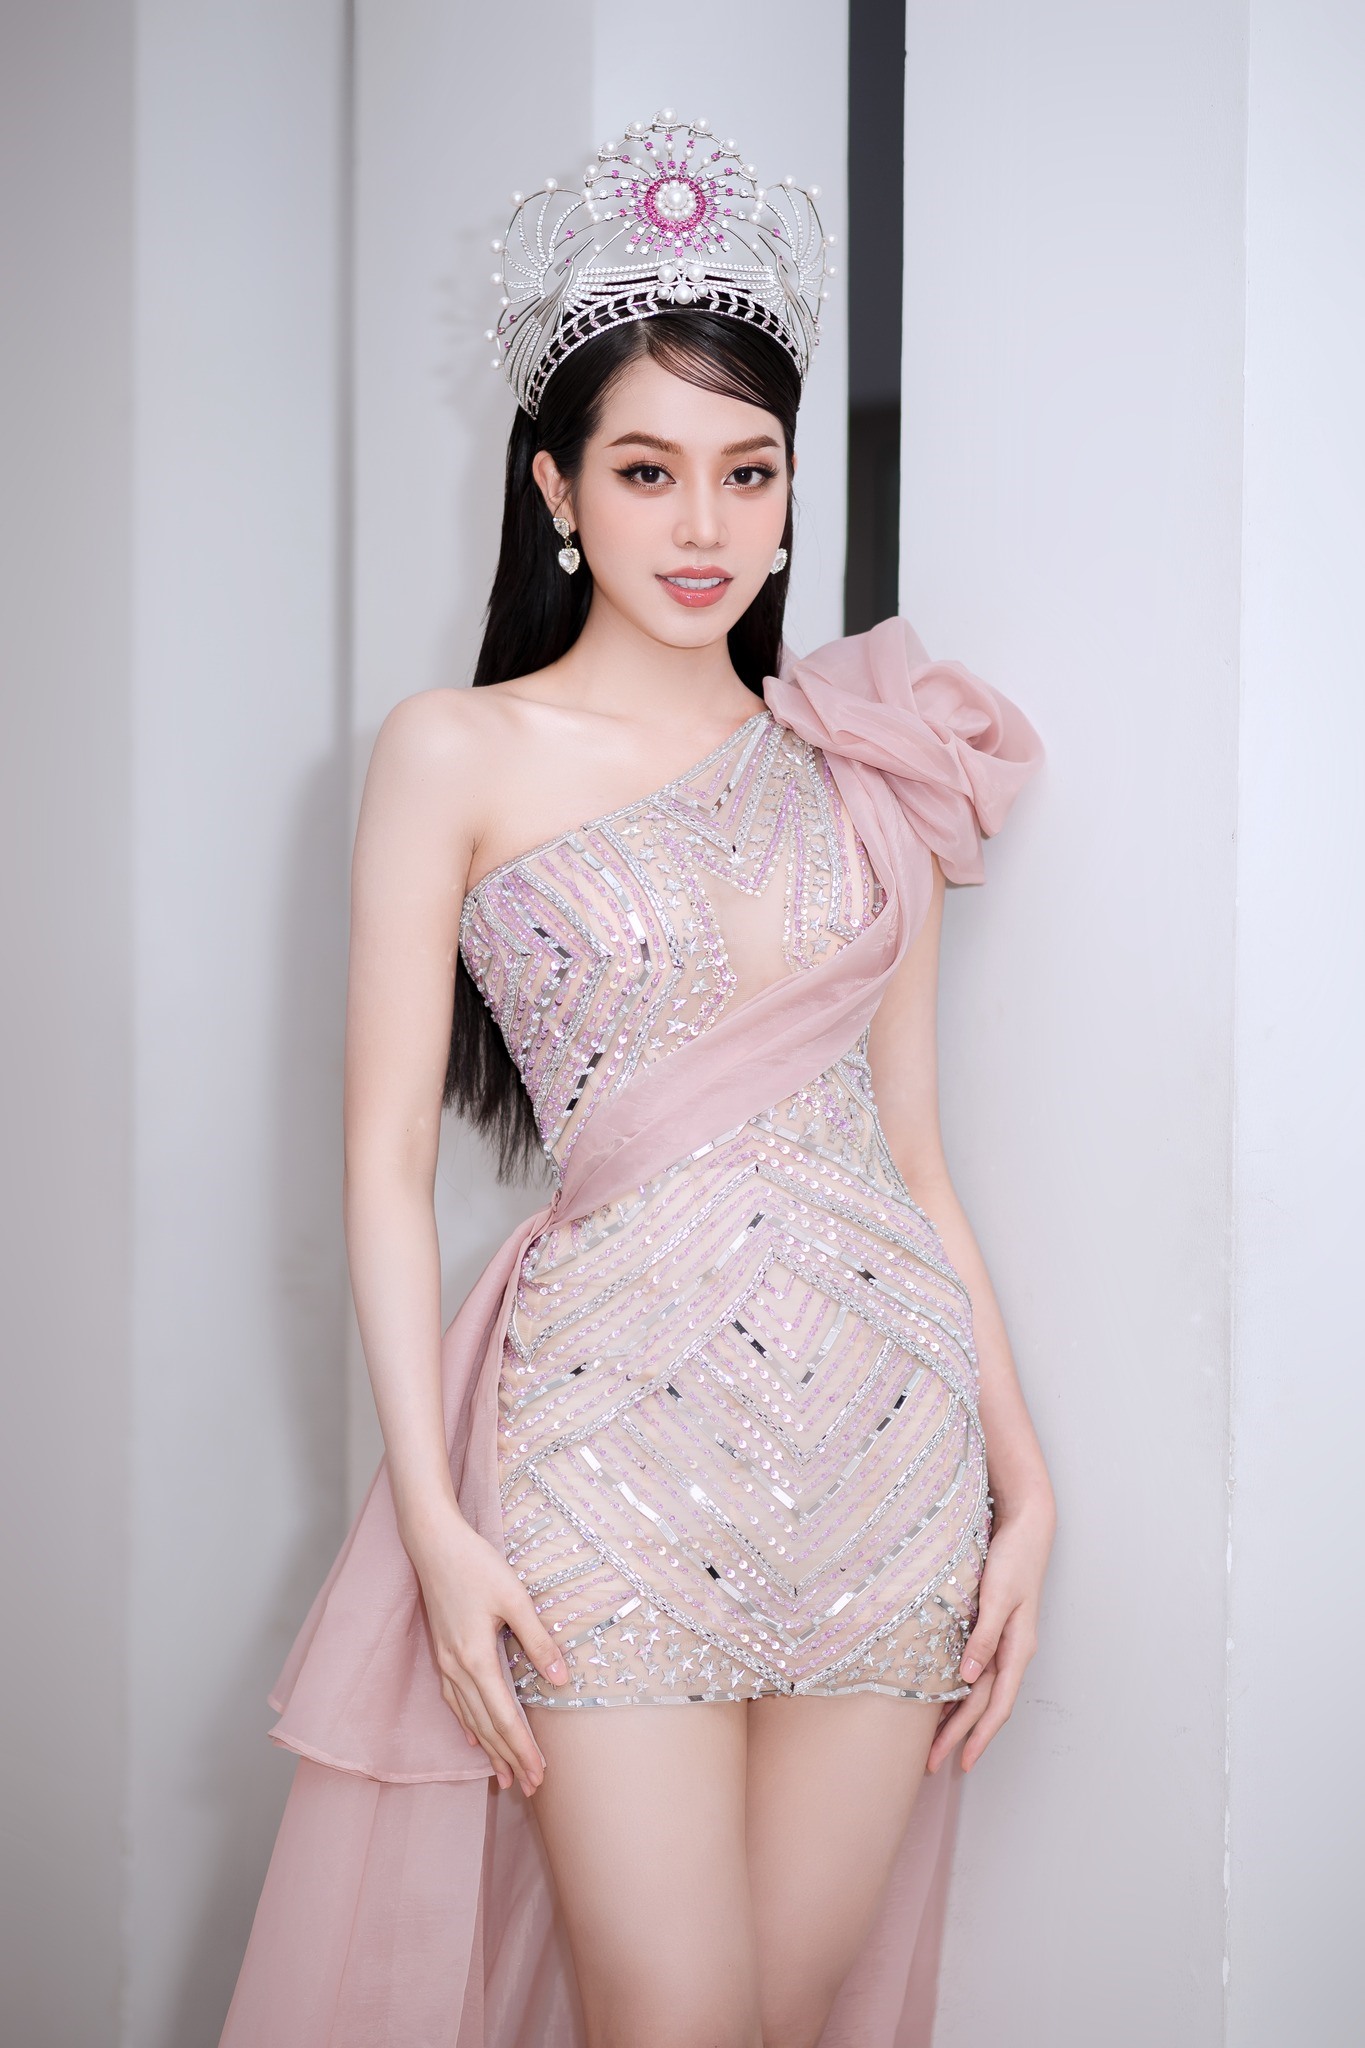 Vẻ đẹp của Hoa hậu Việt Nam sau phẫu thuật thẩm mĩ. Ảnh: Nhân vật cung cấp